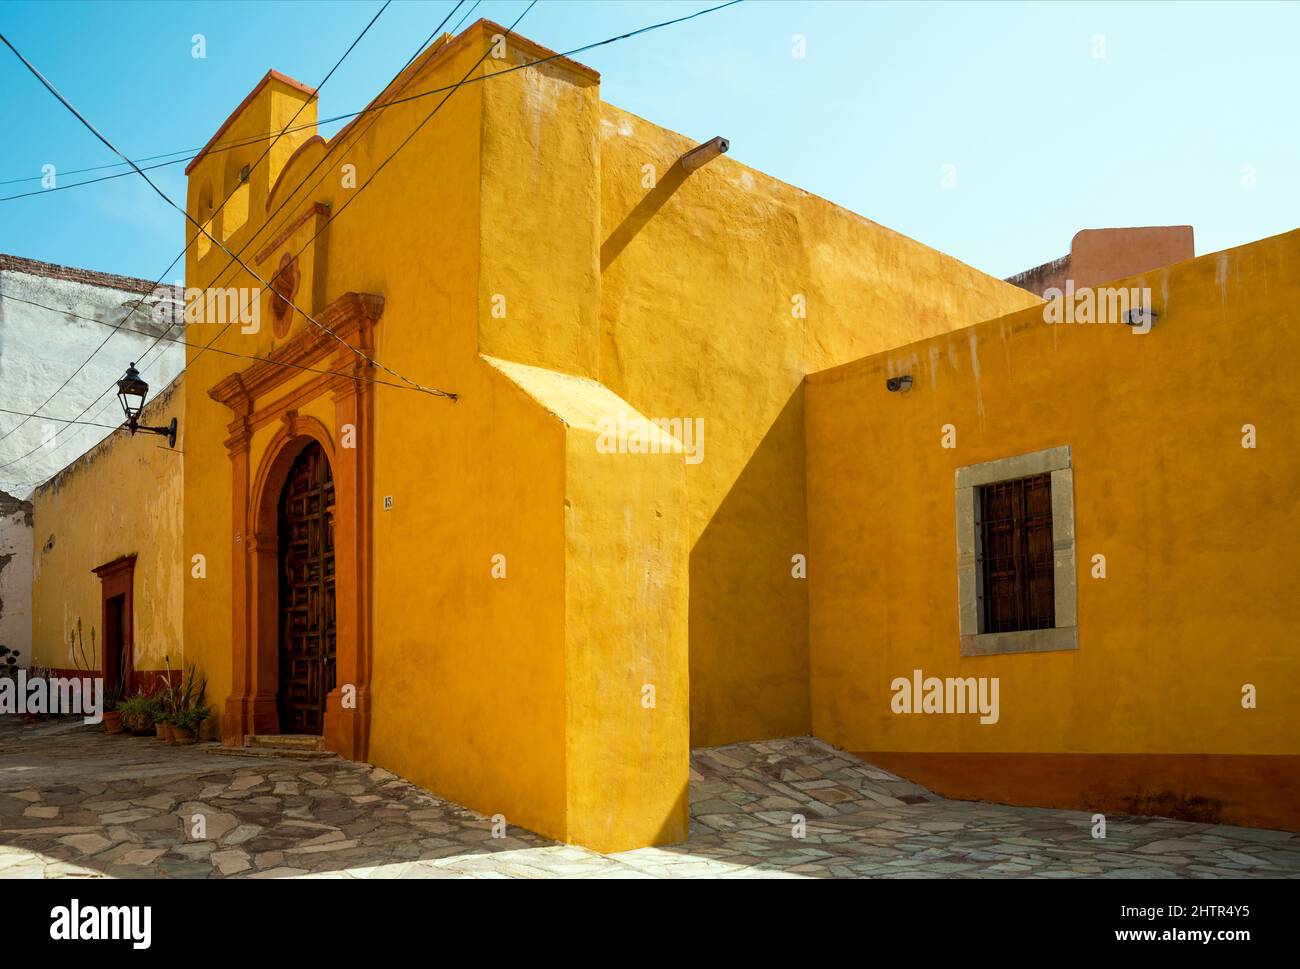 Mexico, Guanajuato,Guanajuato, Spanish Colonial architecture building in yellow  colours Stock Photo